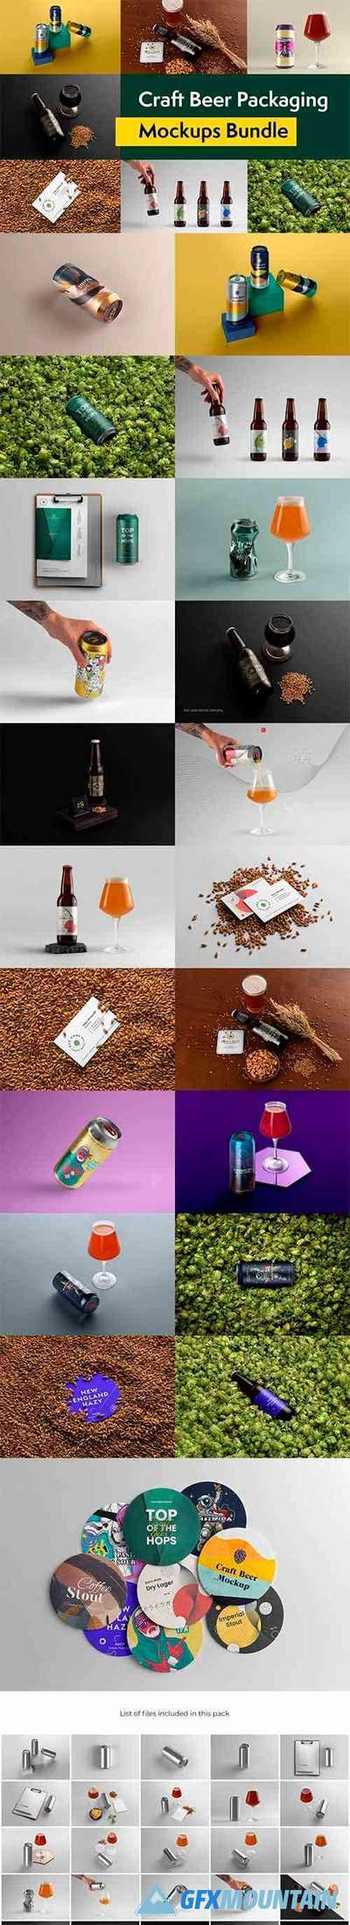 Craft Beer Packaging Mockups 5744421